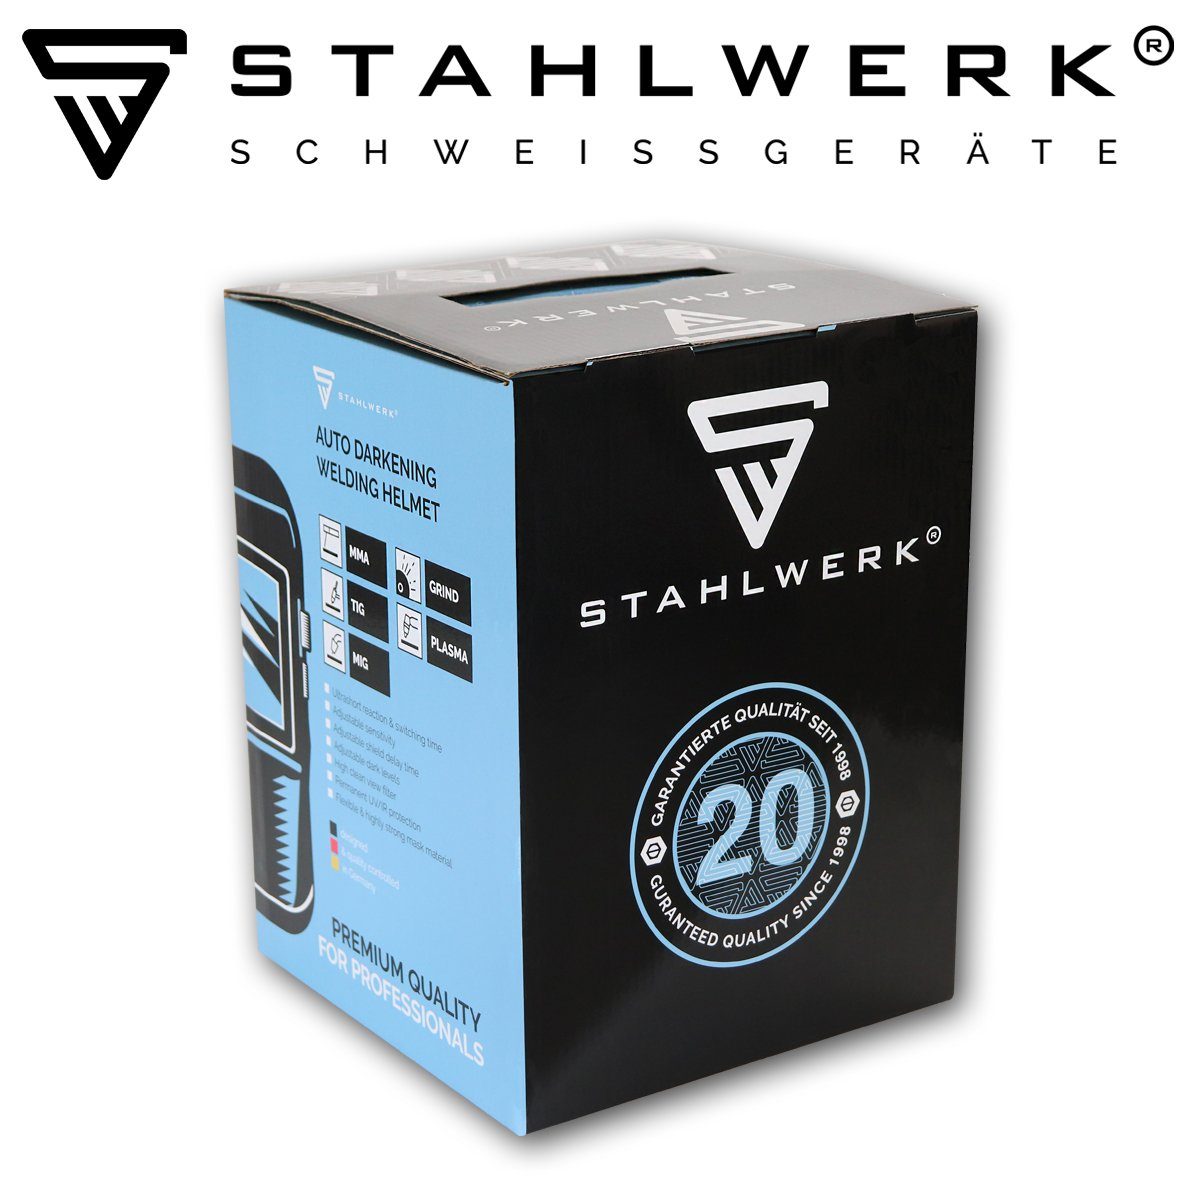 STAHLWERK Schweißhelm ST-950XB REAL COLOUR 7-tlg) Schweißhelm Vollautomatik (Paket